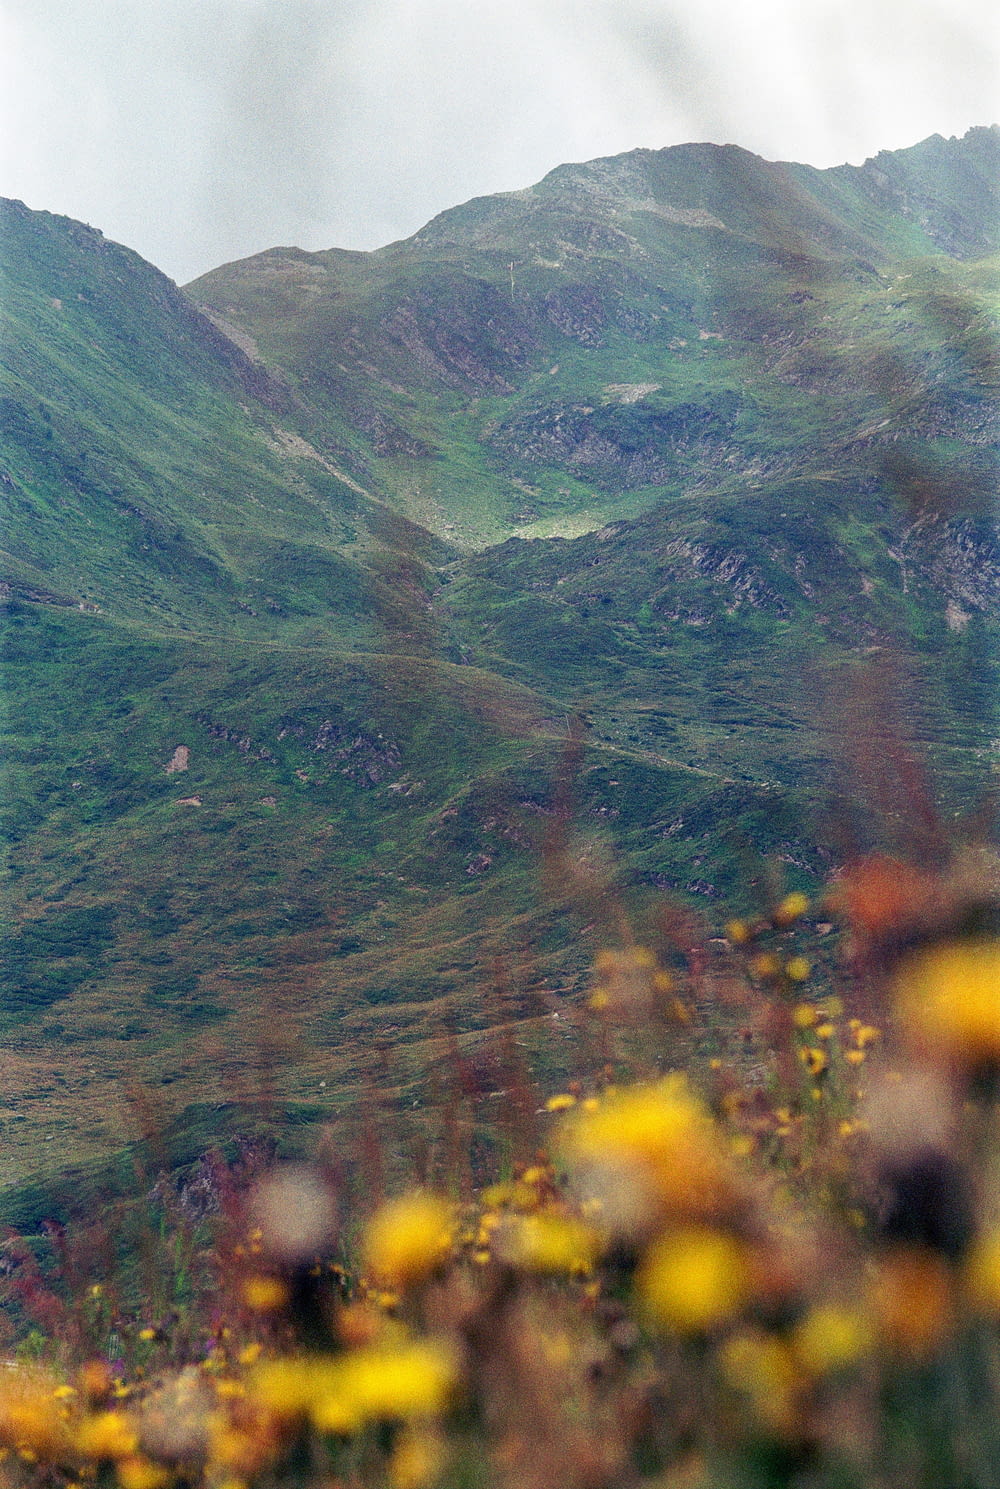 une vue d’une montagne avec des fleurs jaunes au premier plan